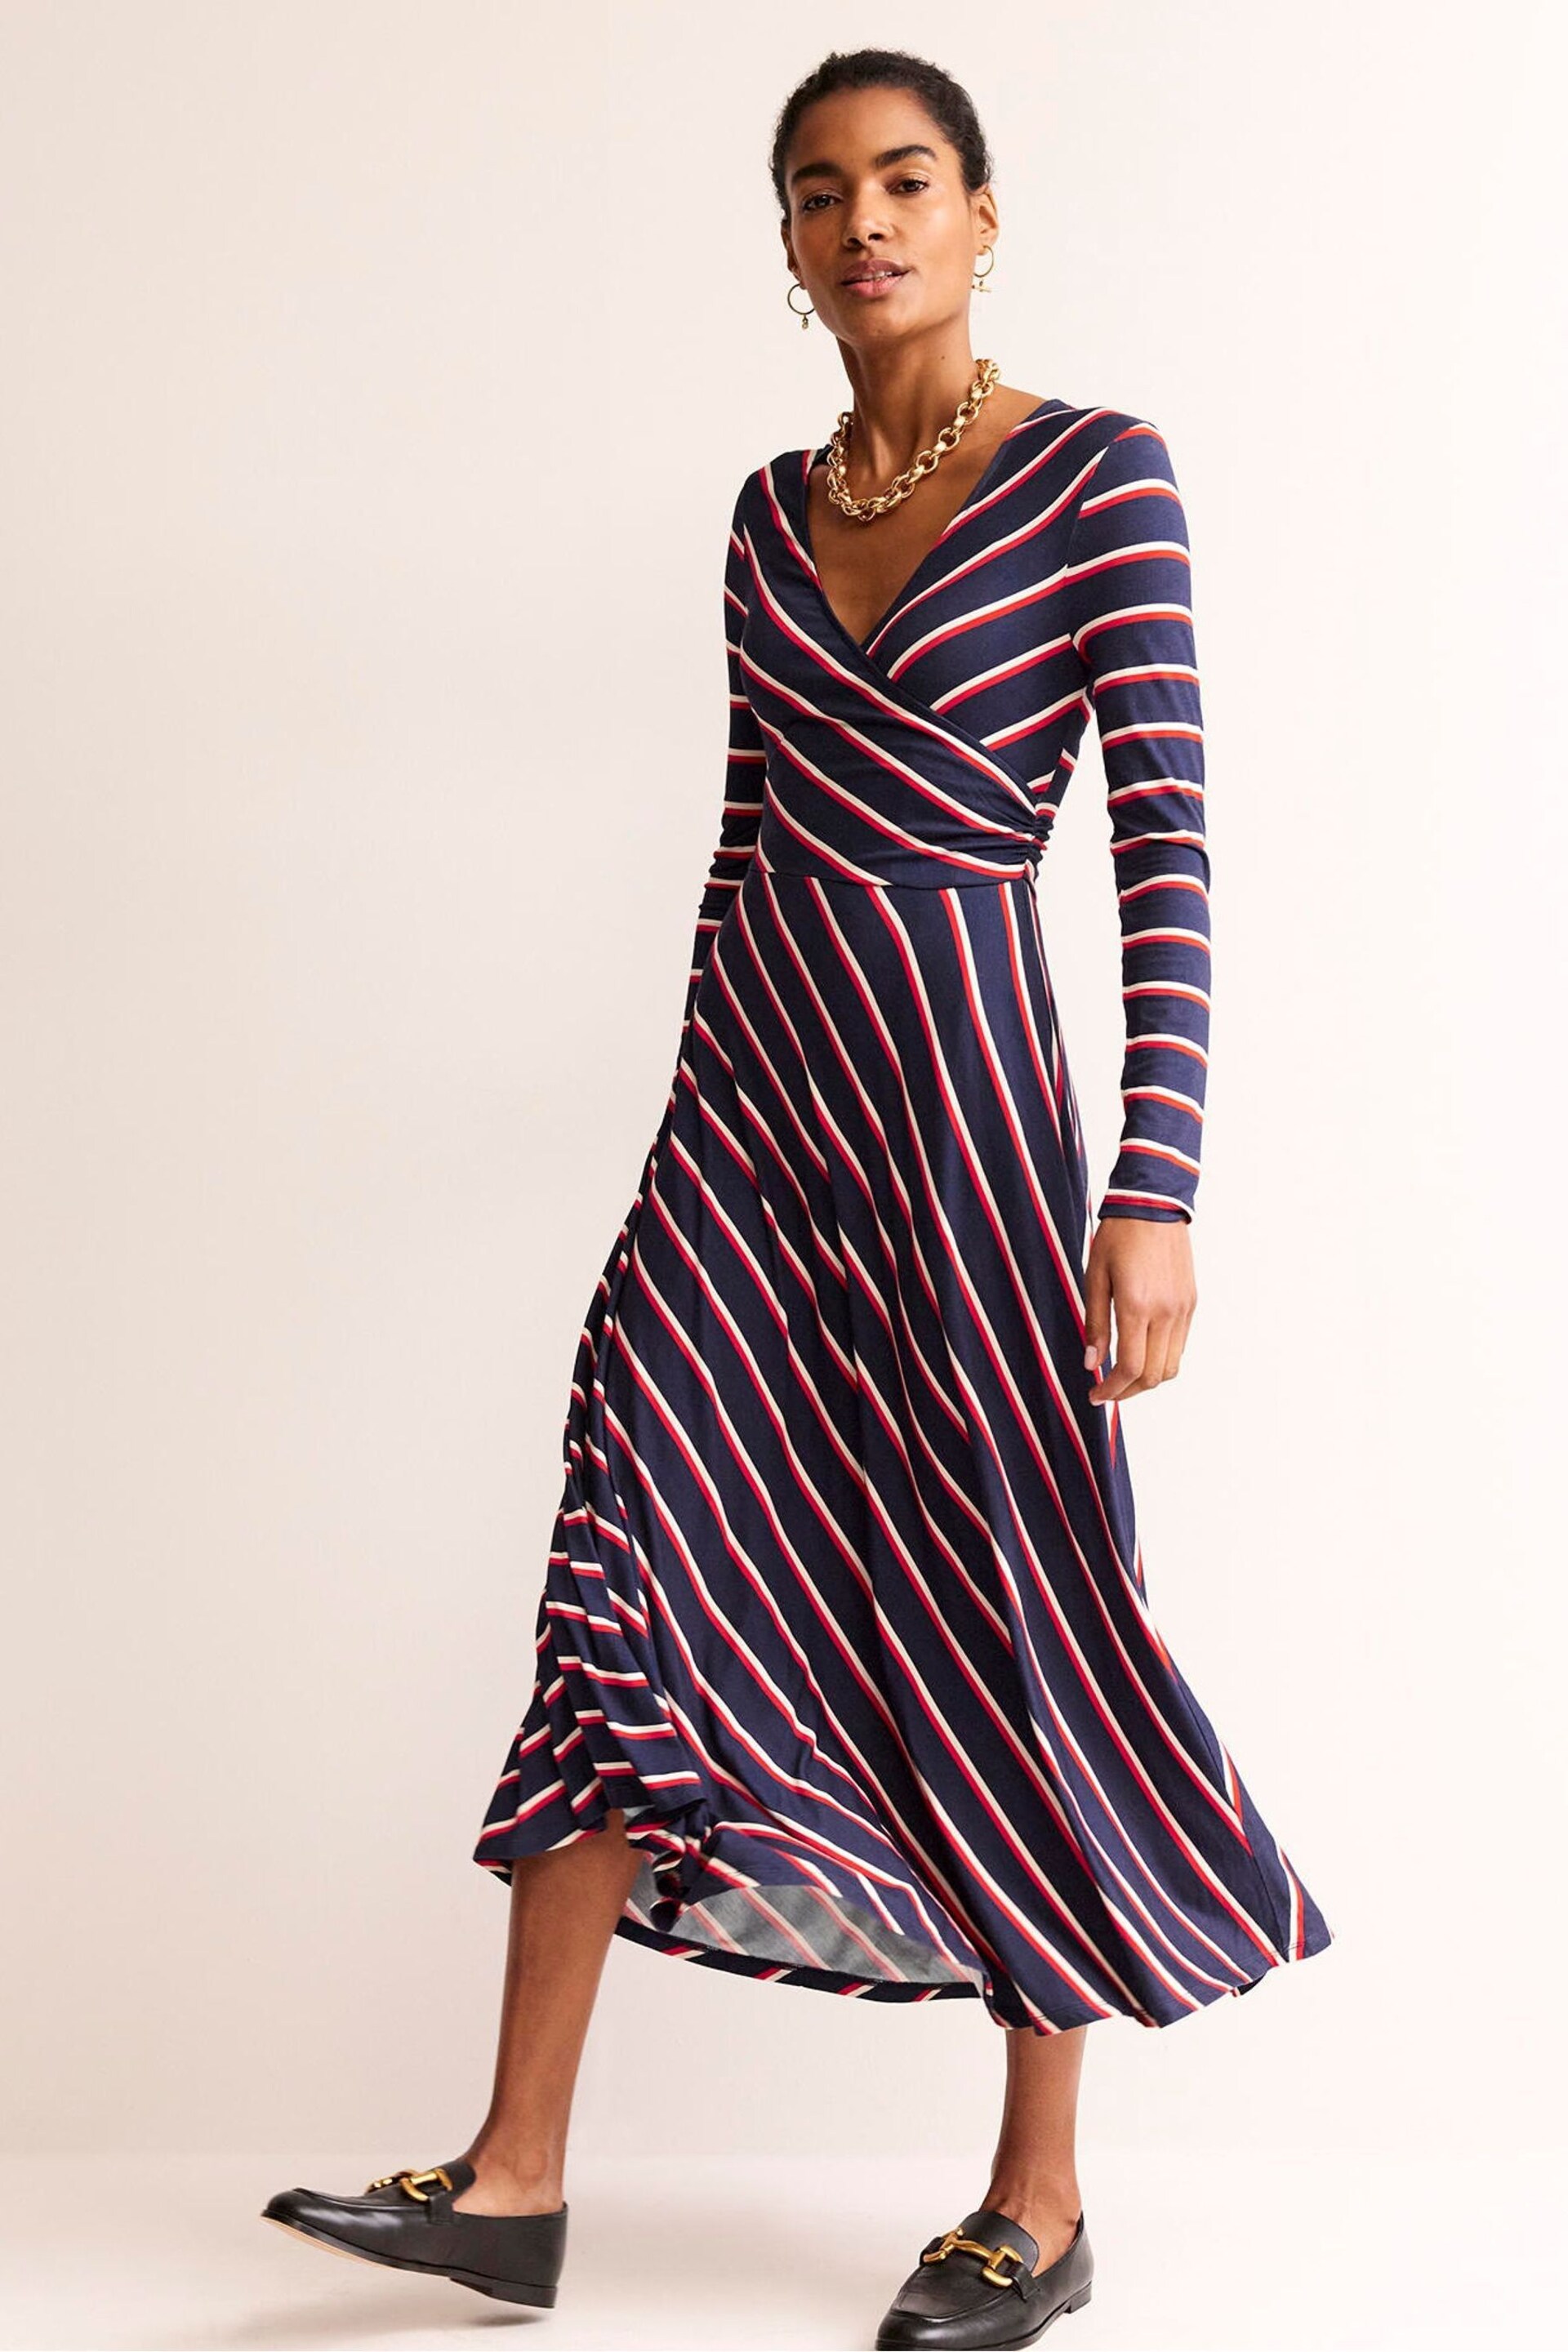 Boden Blue Hotch Stripe Jersey Midi Dress - Image 1 of 5